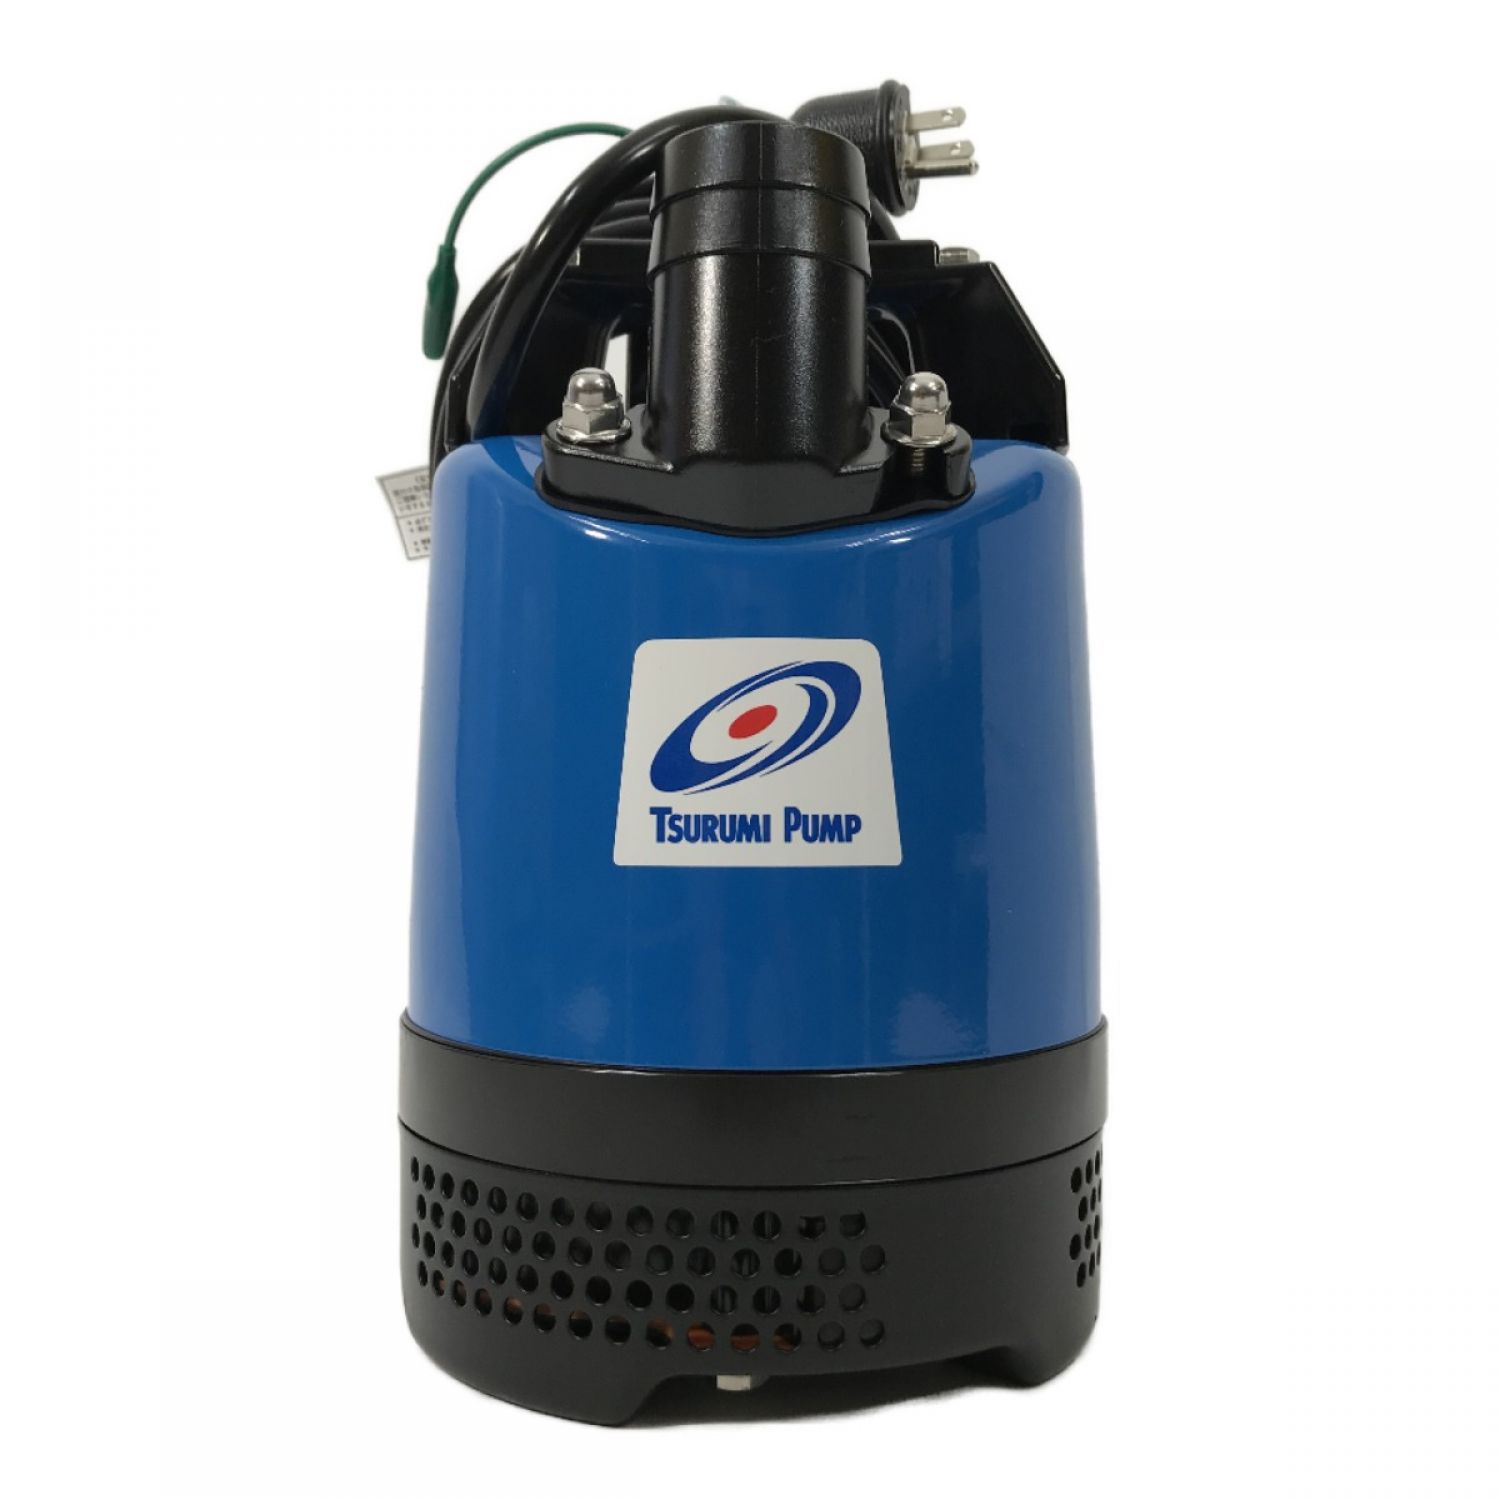 激安価格の ツルミポンプ LB-250 水中ハイスピンポンプ (鶴見製作所) 一般工事排水 LB型 水中ハイスピンポンプ